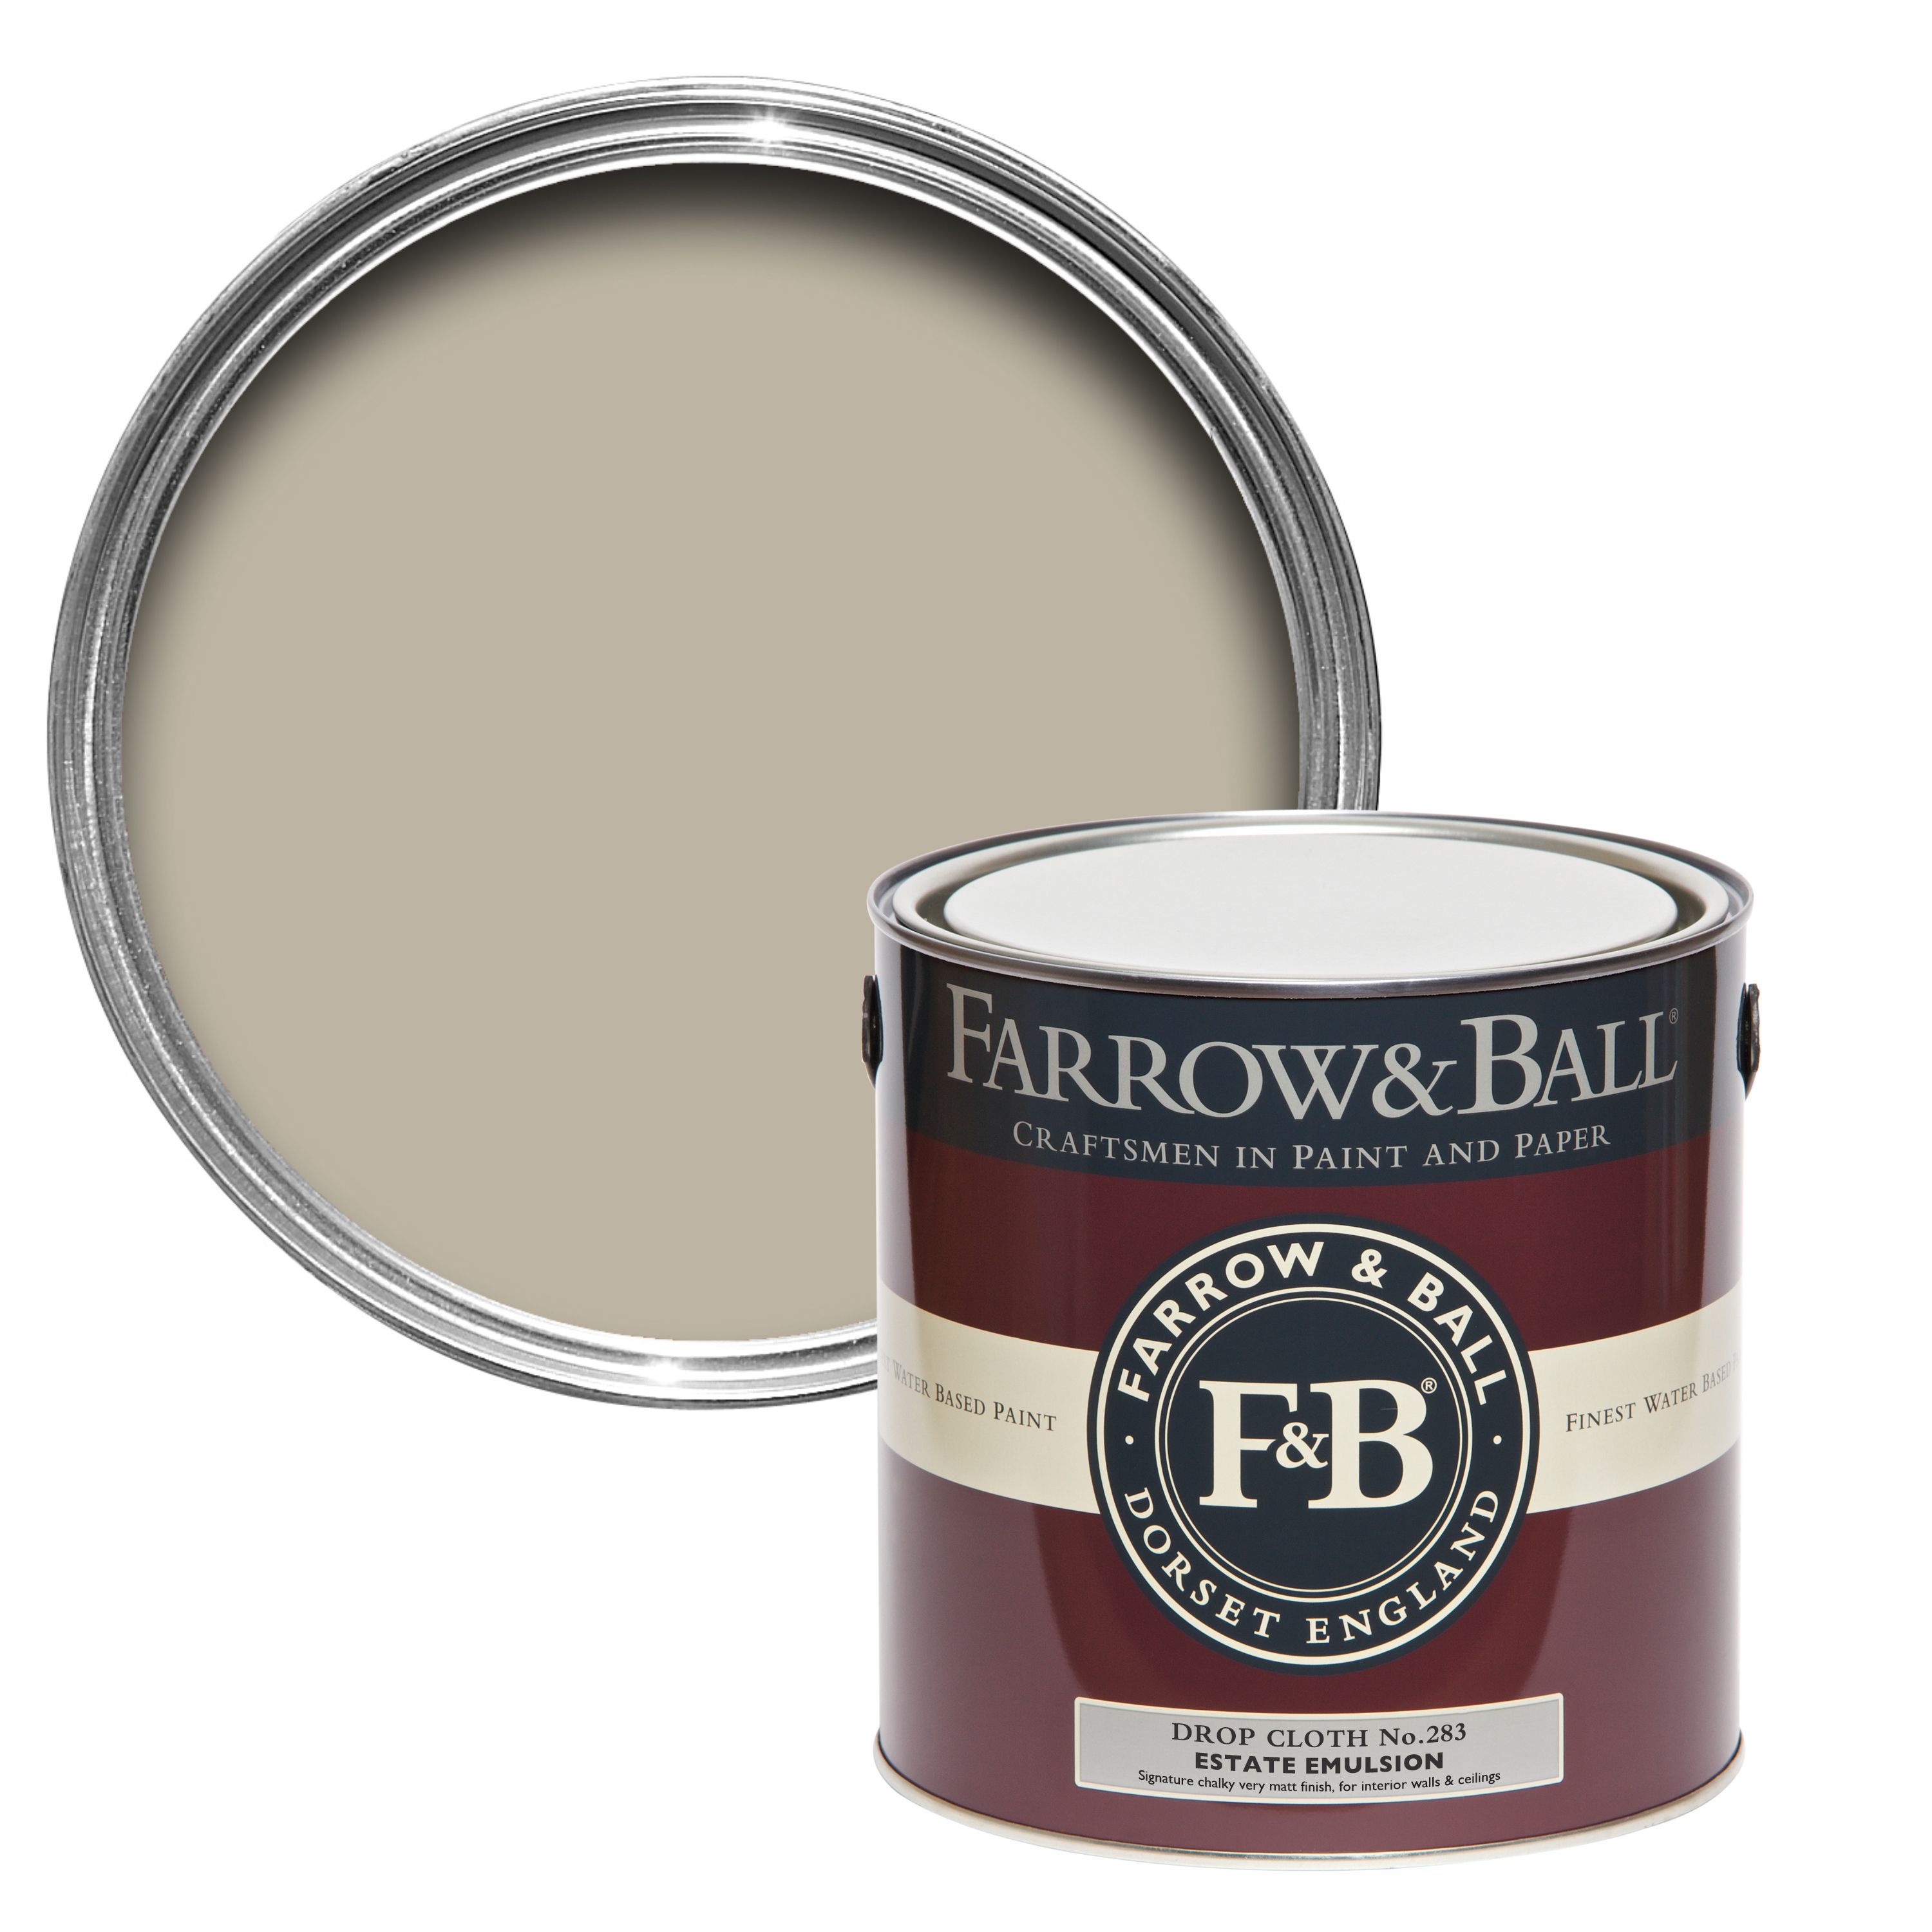 Farrow & Ball Estate Drop cloth No.283 Matt Emulsion paint, 2.5L Tester pot